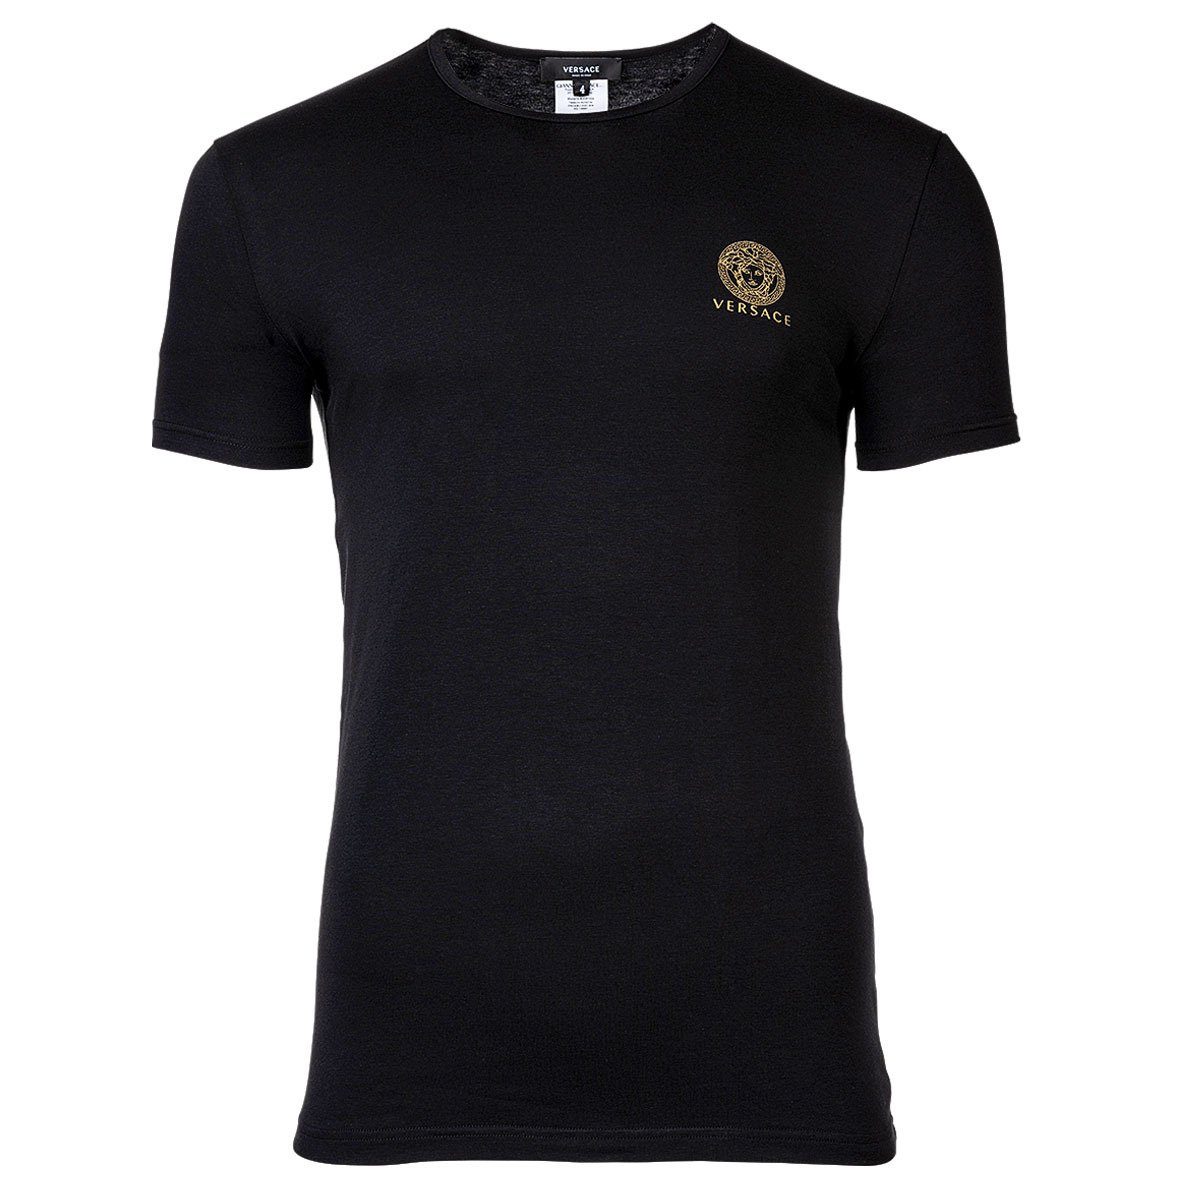 Versace T-Shirt Herren T-Shirt - Unterhemd, Rundhals, Stretch, Hochwertige  Qualität, perfekter Tragekomfort